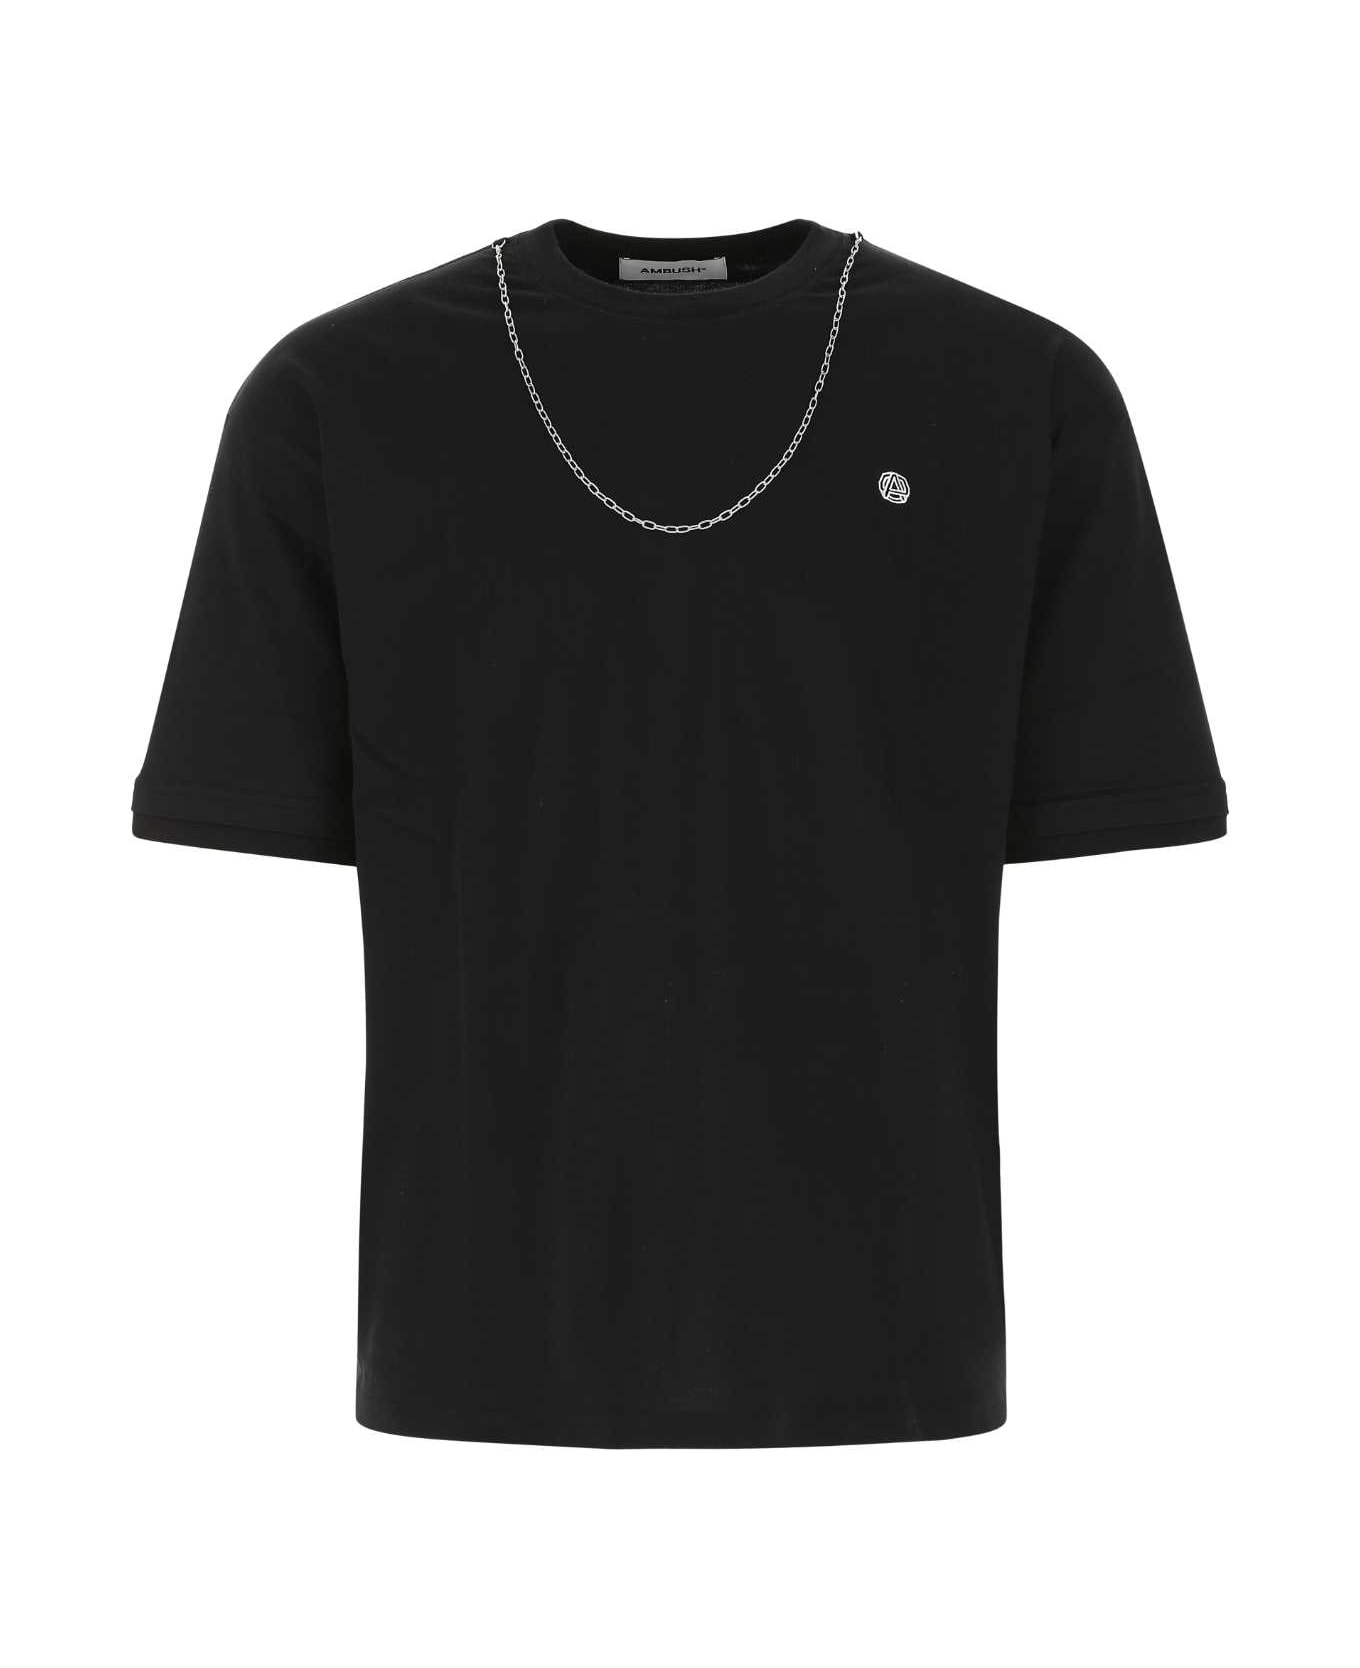 AMBUSH Black Cotton T-shirt - 1003